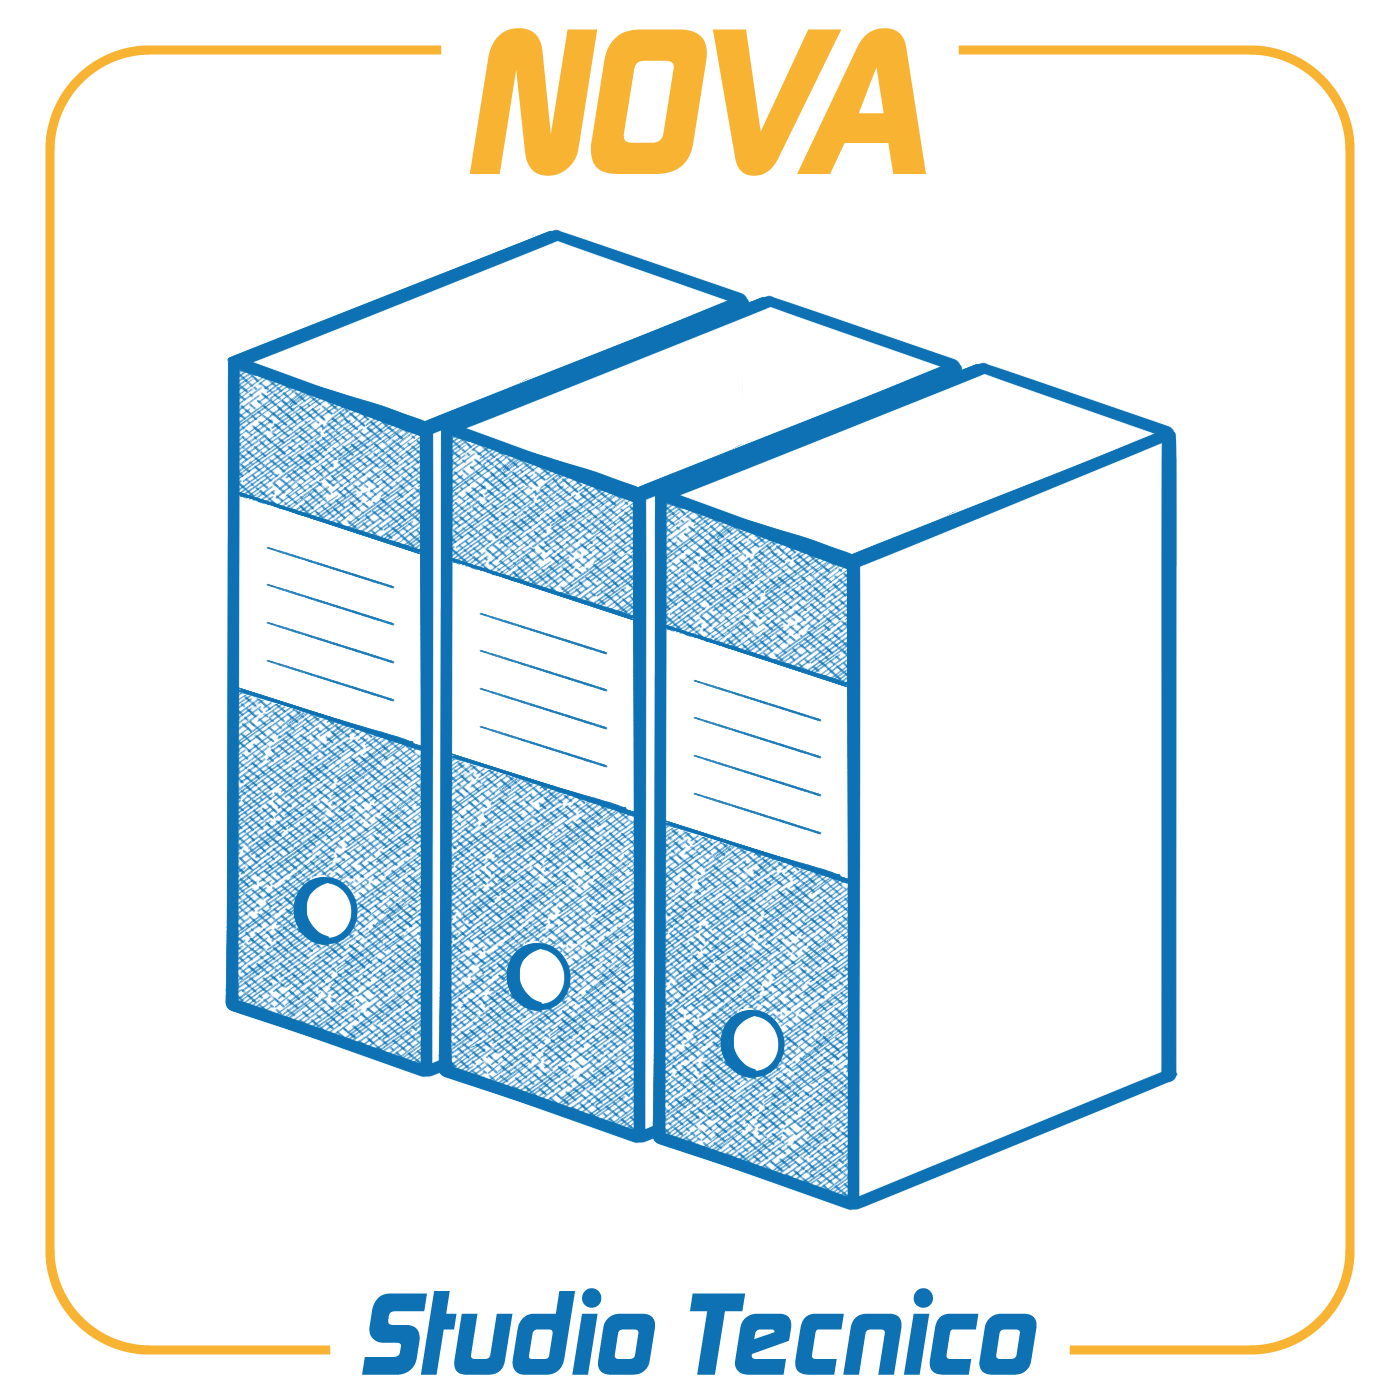 NOVA Studio TecnicoSoftware modulare per la gestione integrale dello studio tecnico (pratiche, parcellazione, contabilità, repertorio telematico, modulistica PDF, modelli unici per l'edilizia ecc.). Disponibile anche in versione client/server e PenDrive.